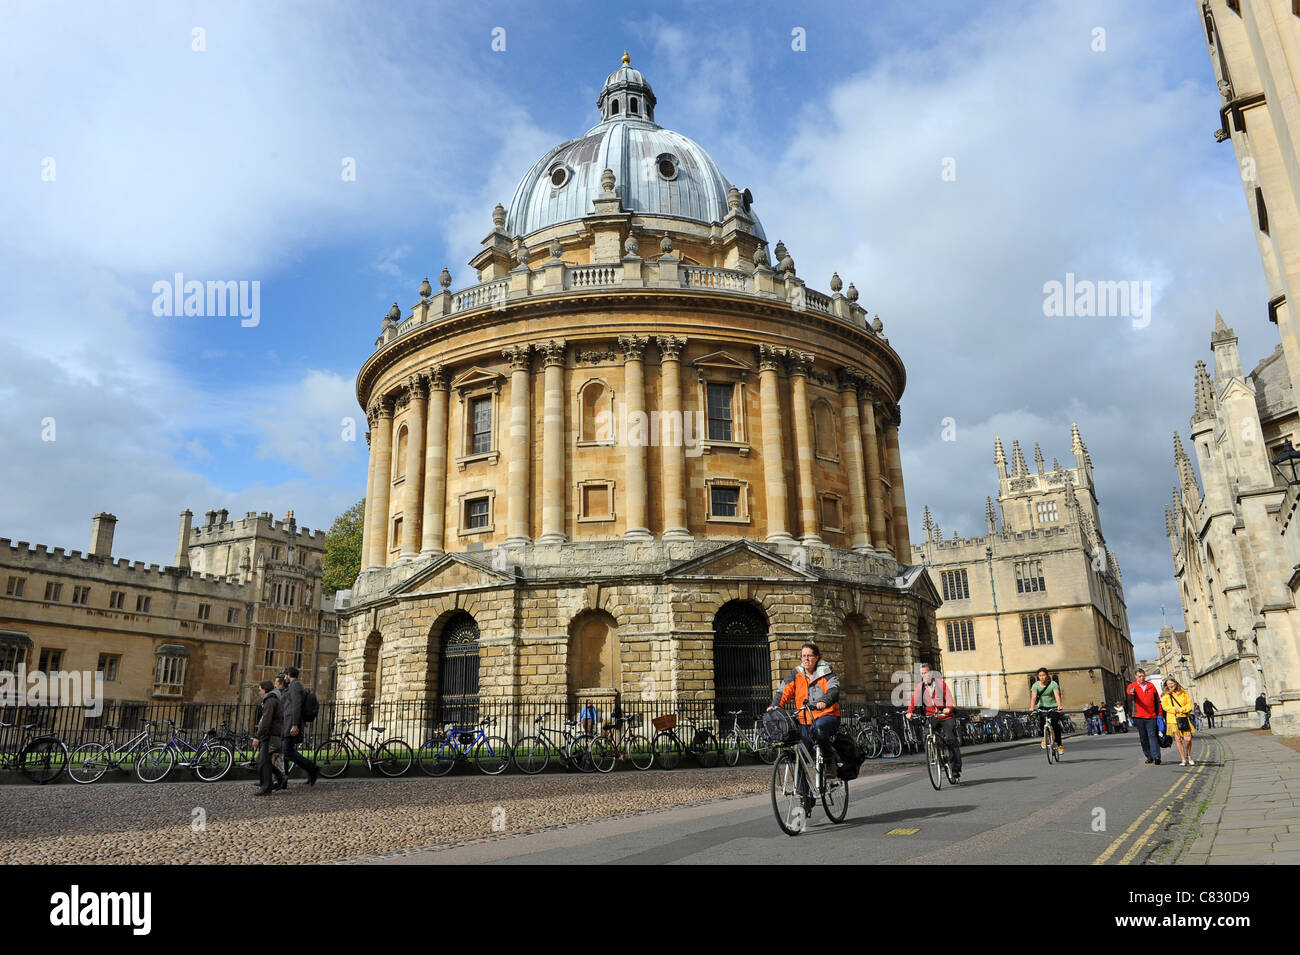 La Radcliffe Camera l'Université d'Oxford England Uk Banque D'Images